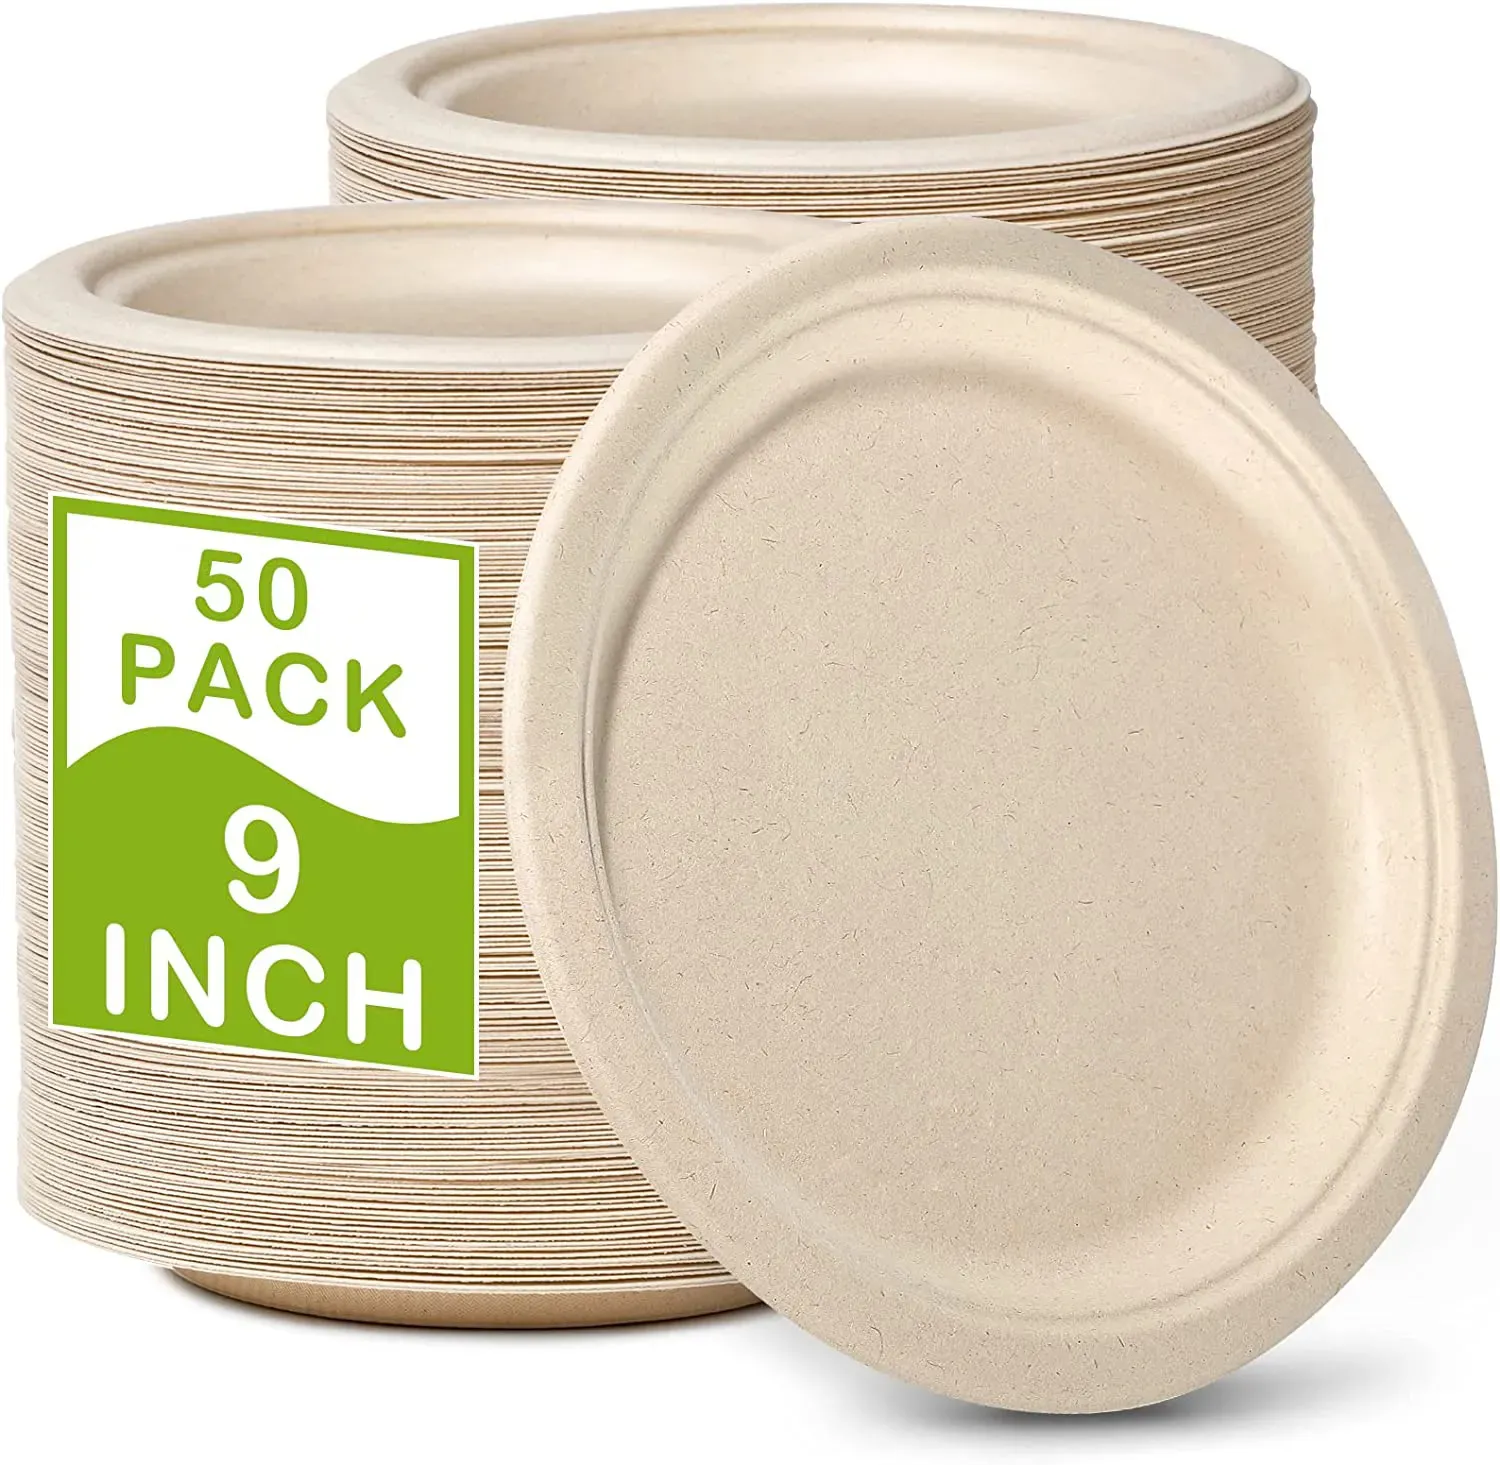 100% assiettes de bagasse compostables de 9 pouces assiette de bagasse biodégradable jetable naturelle avec écologique en fibre de canne à sucre